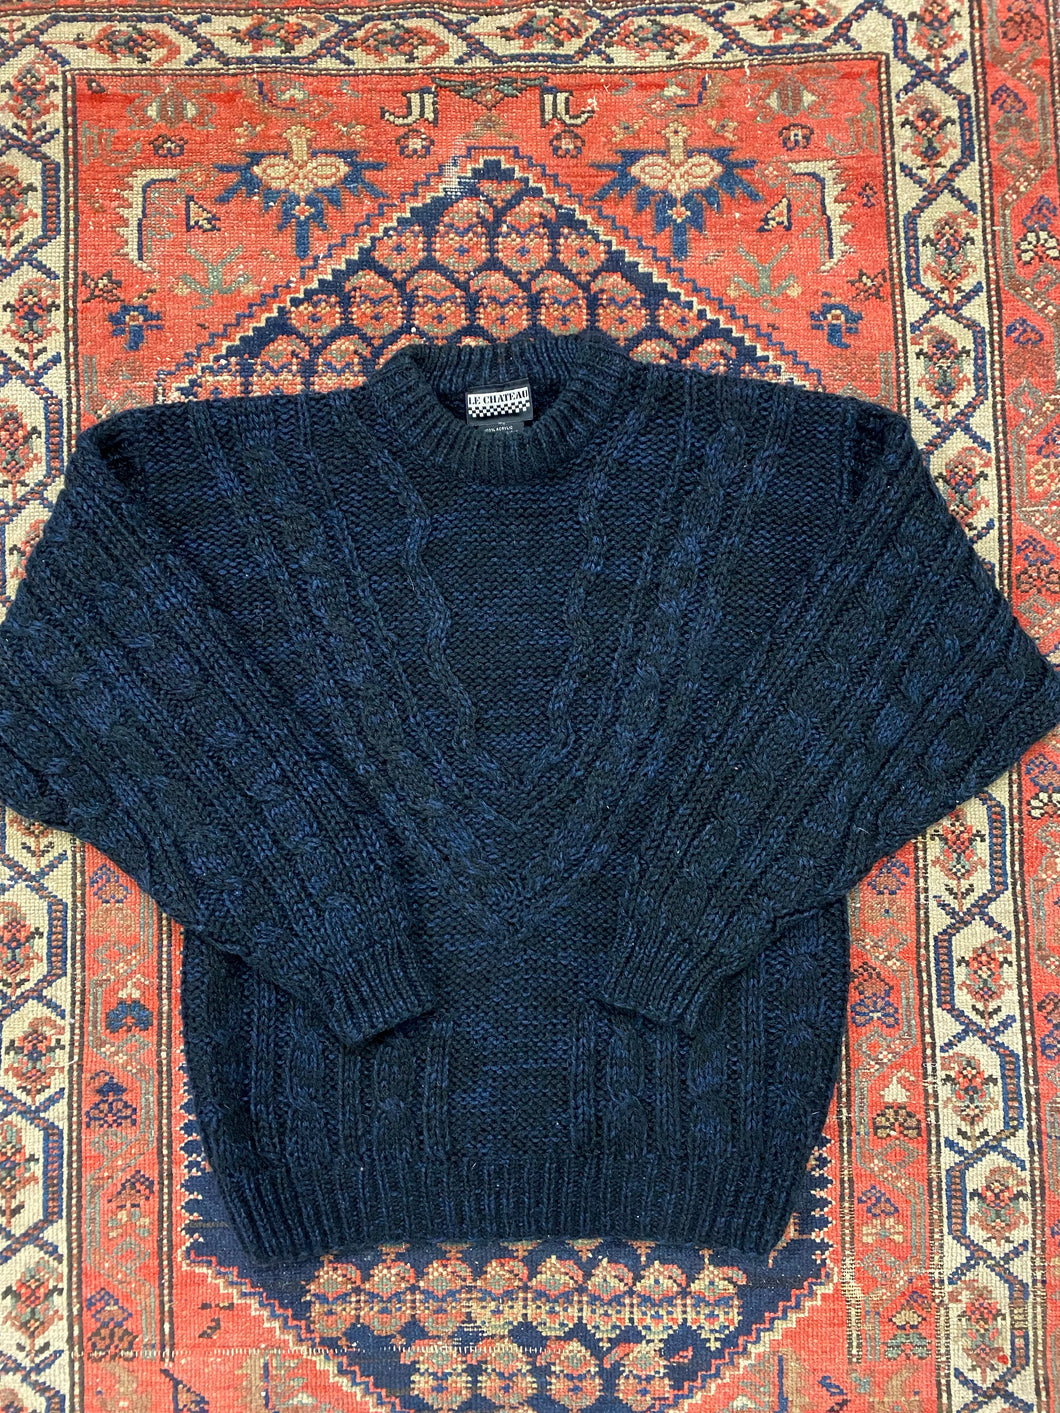 Vintage Heavy Knit Sweater - L